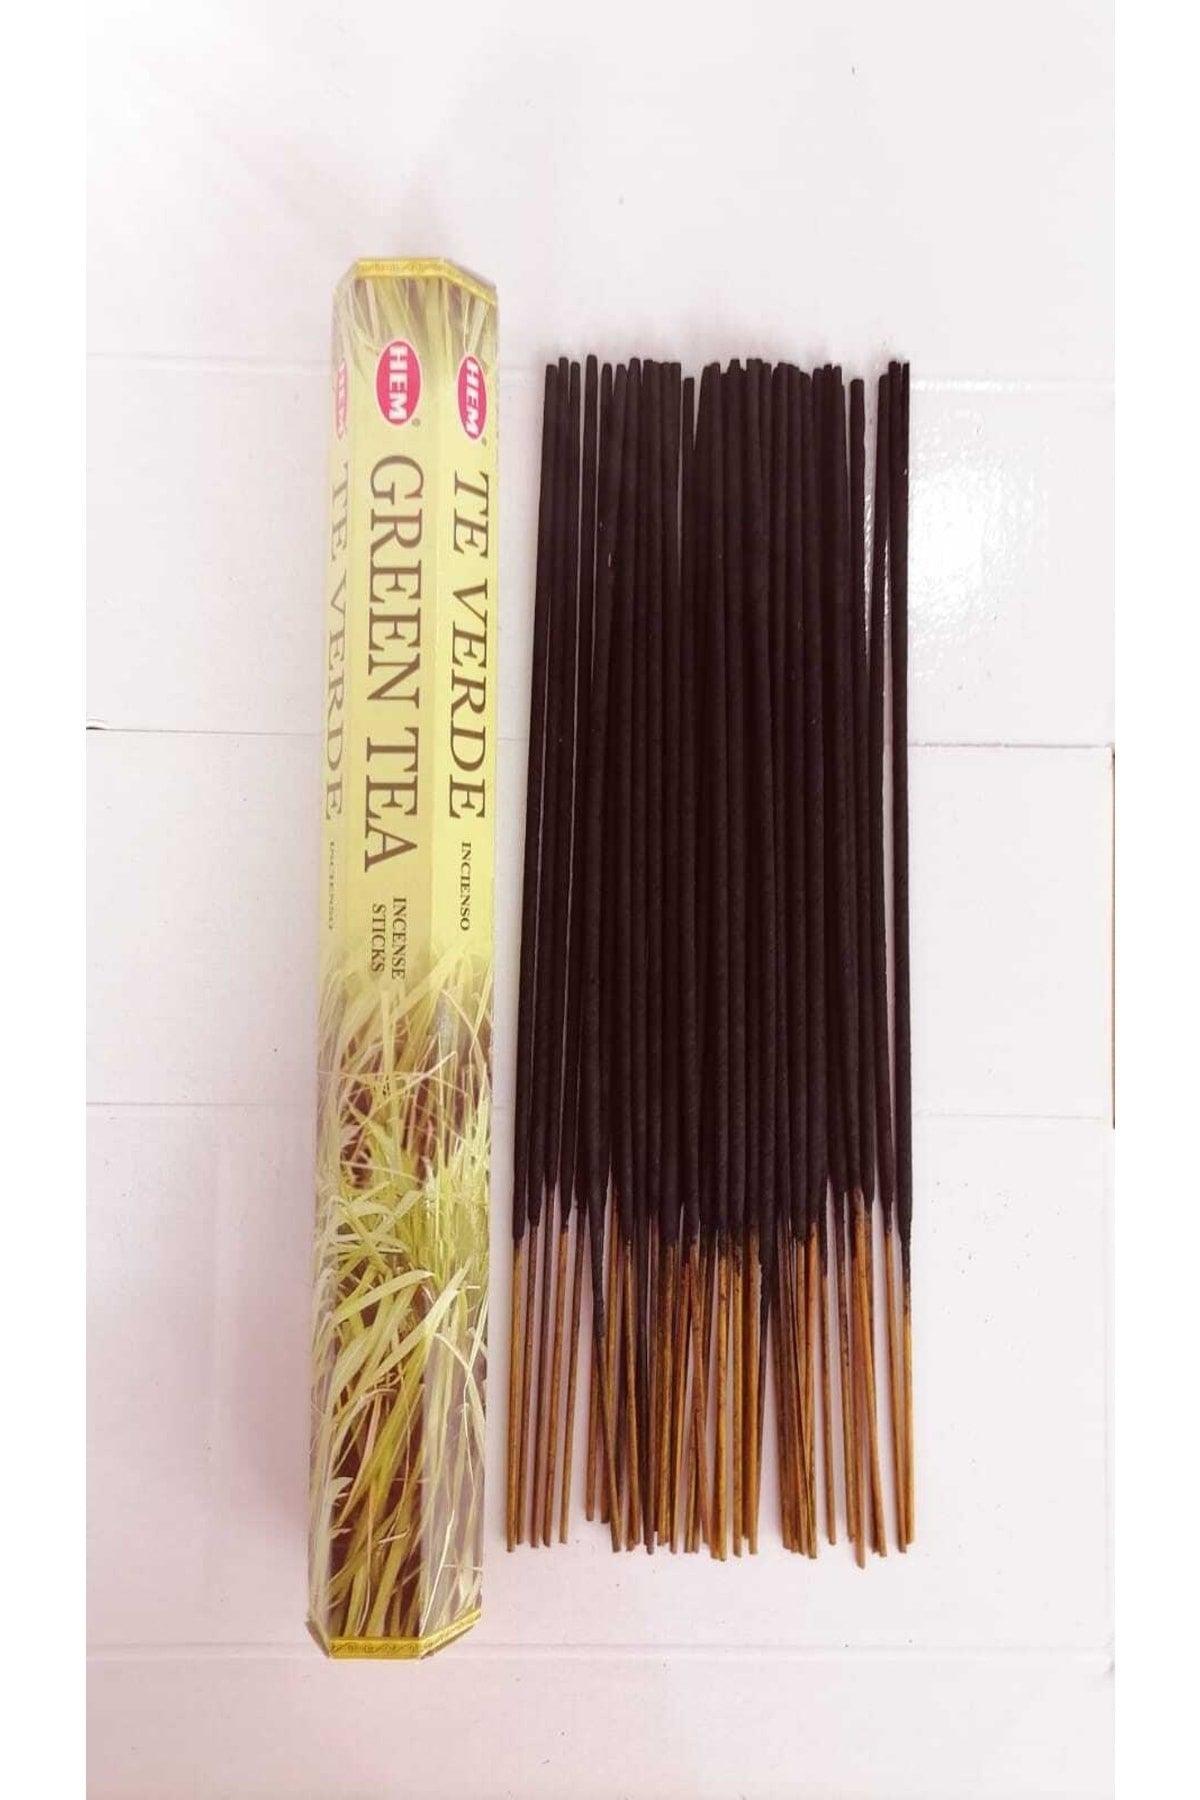 Green Tea Scented 1 Box Stick Incense 20 pcs - Swordslife